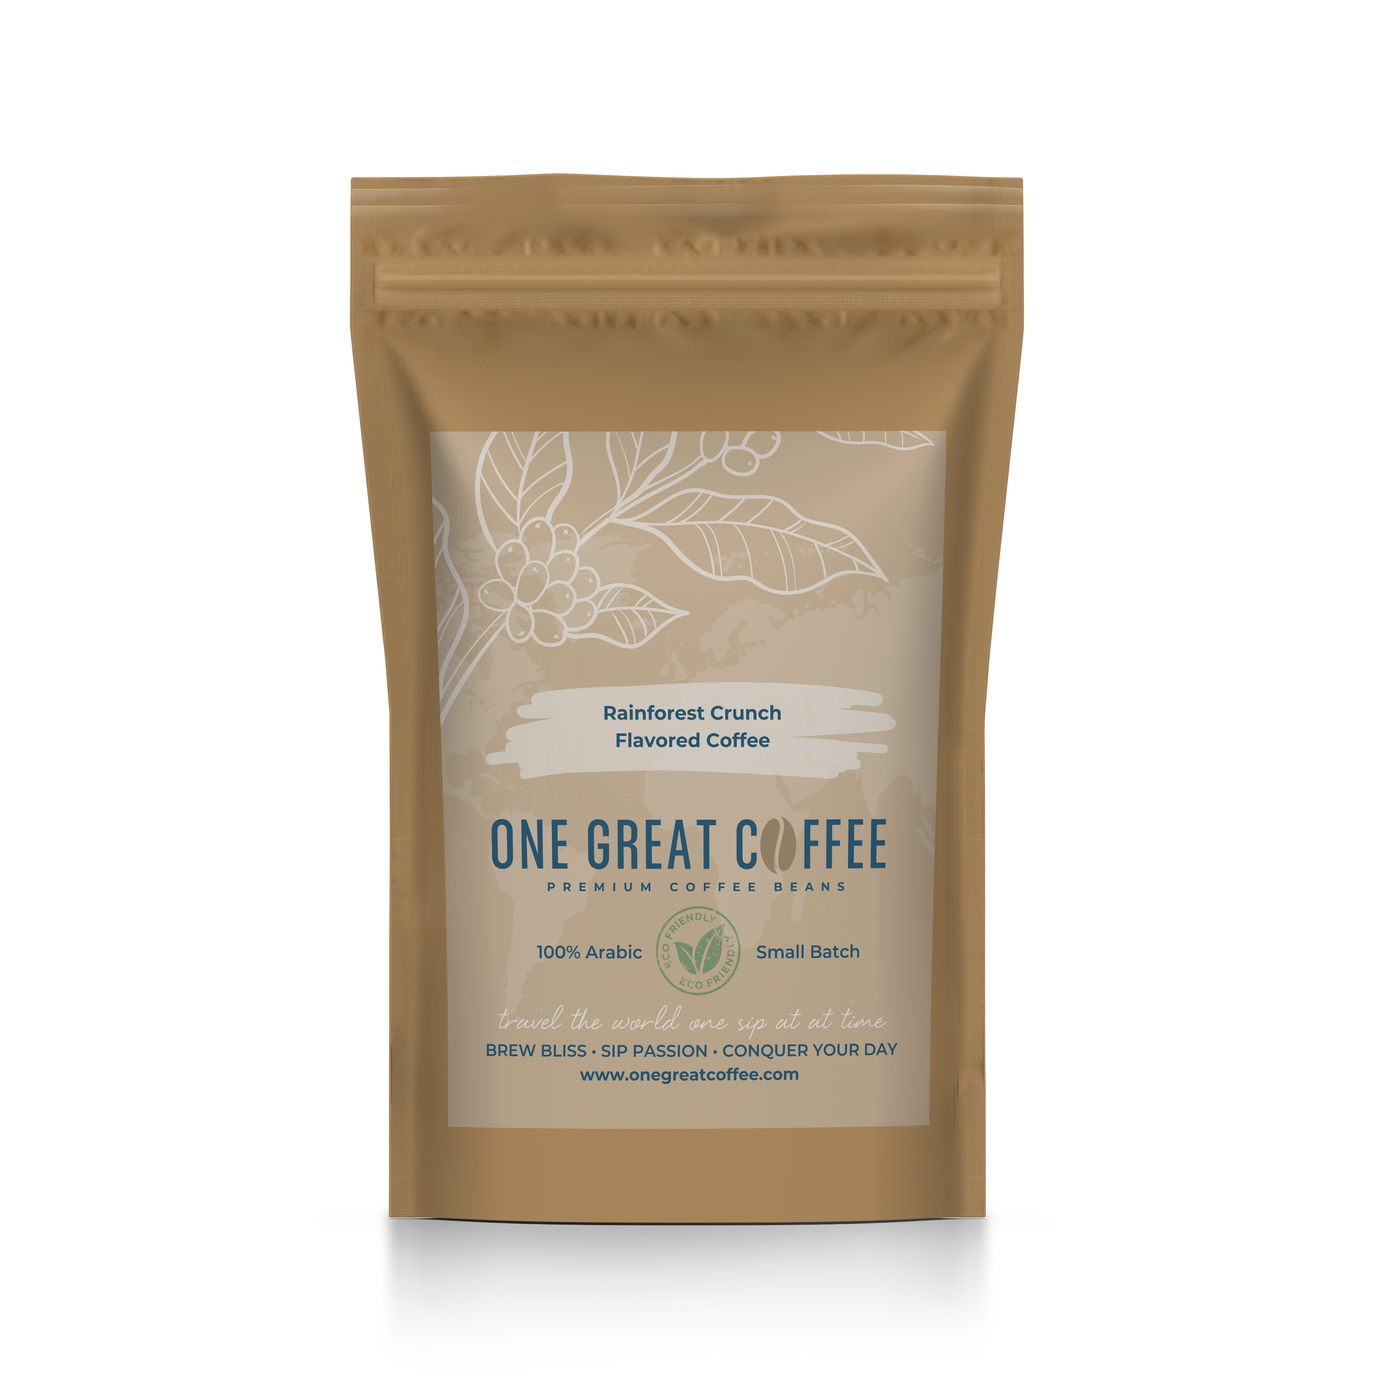 Rainforest Crunch Flavored Coffee